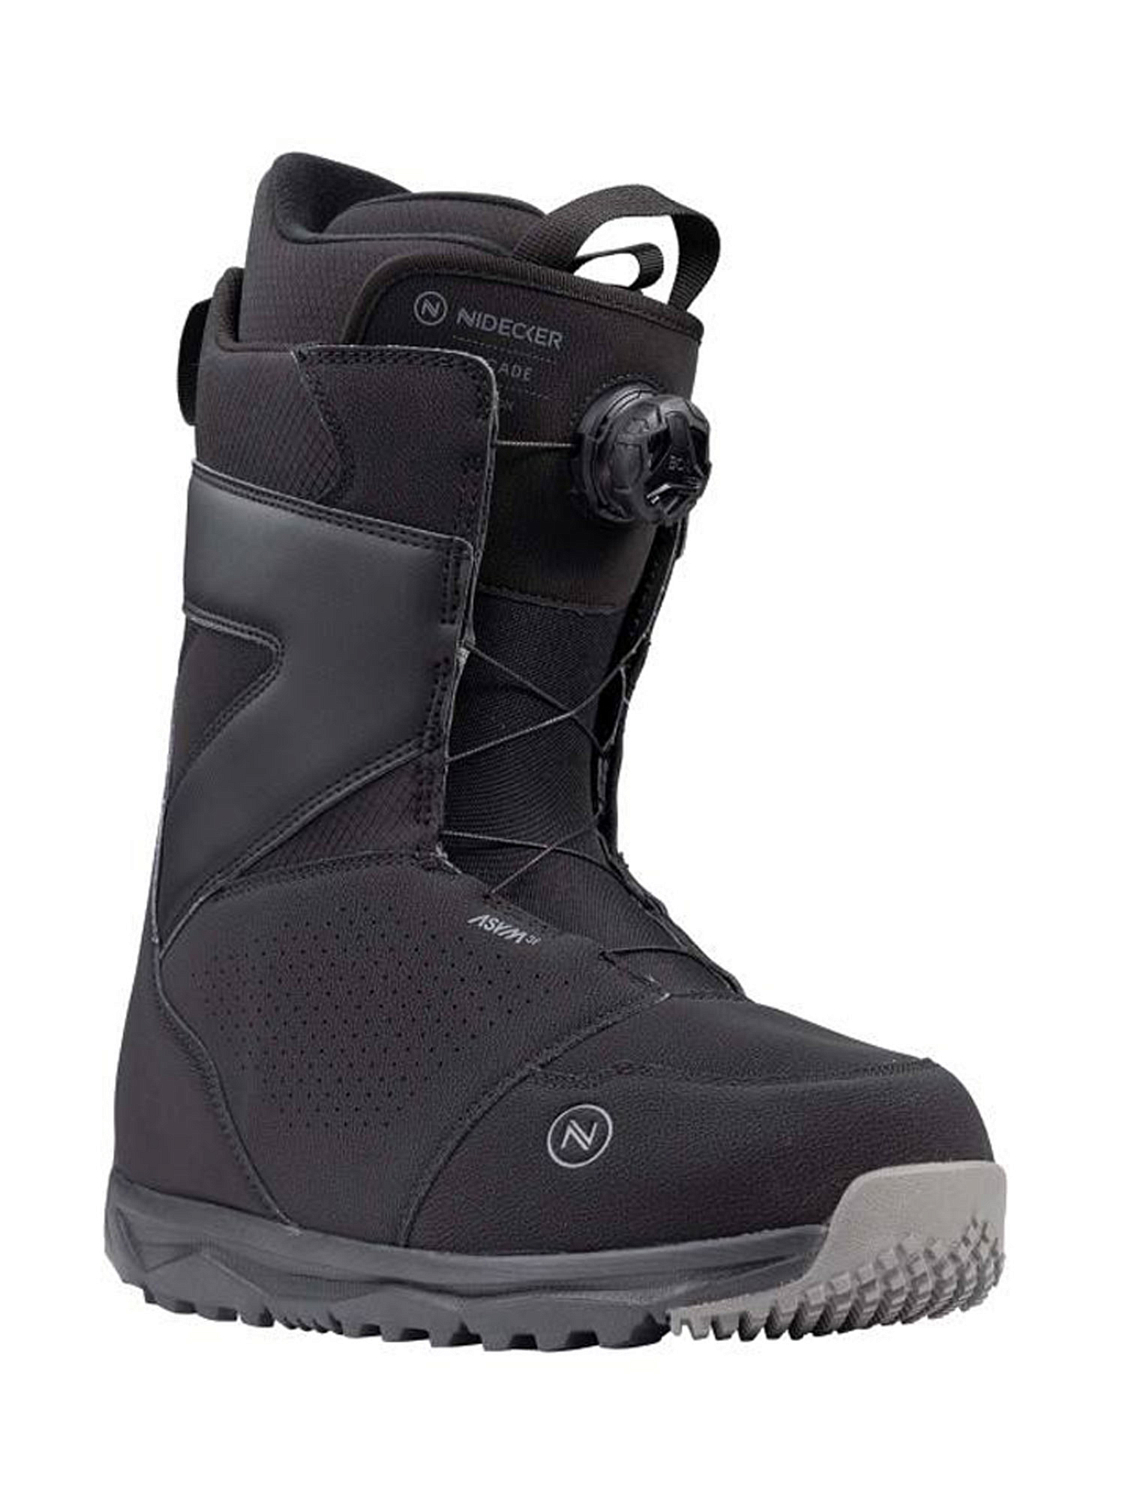 Ботинки для сноуборда NIDECKER Cascade Black — купить недорого, цены в  магазине КАНТ